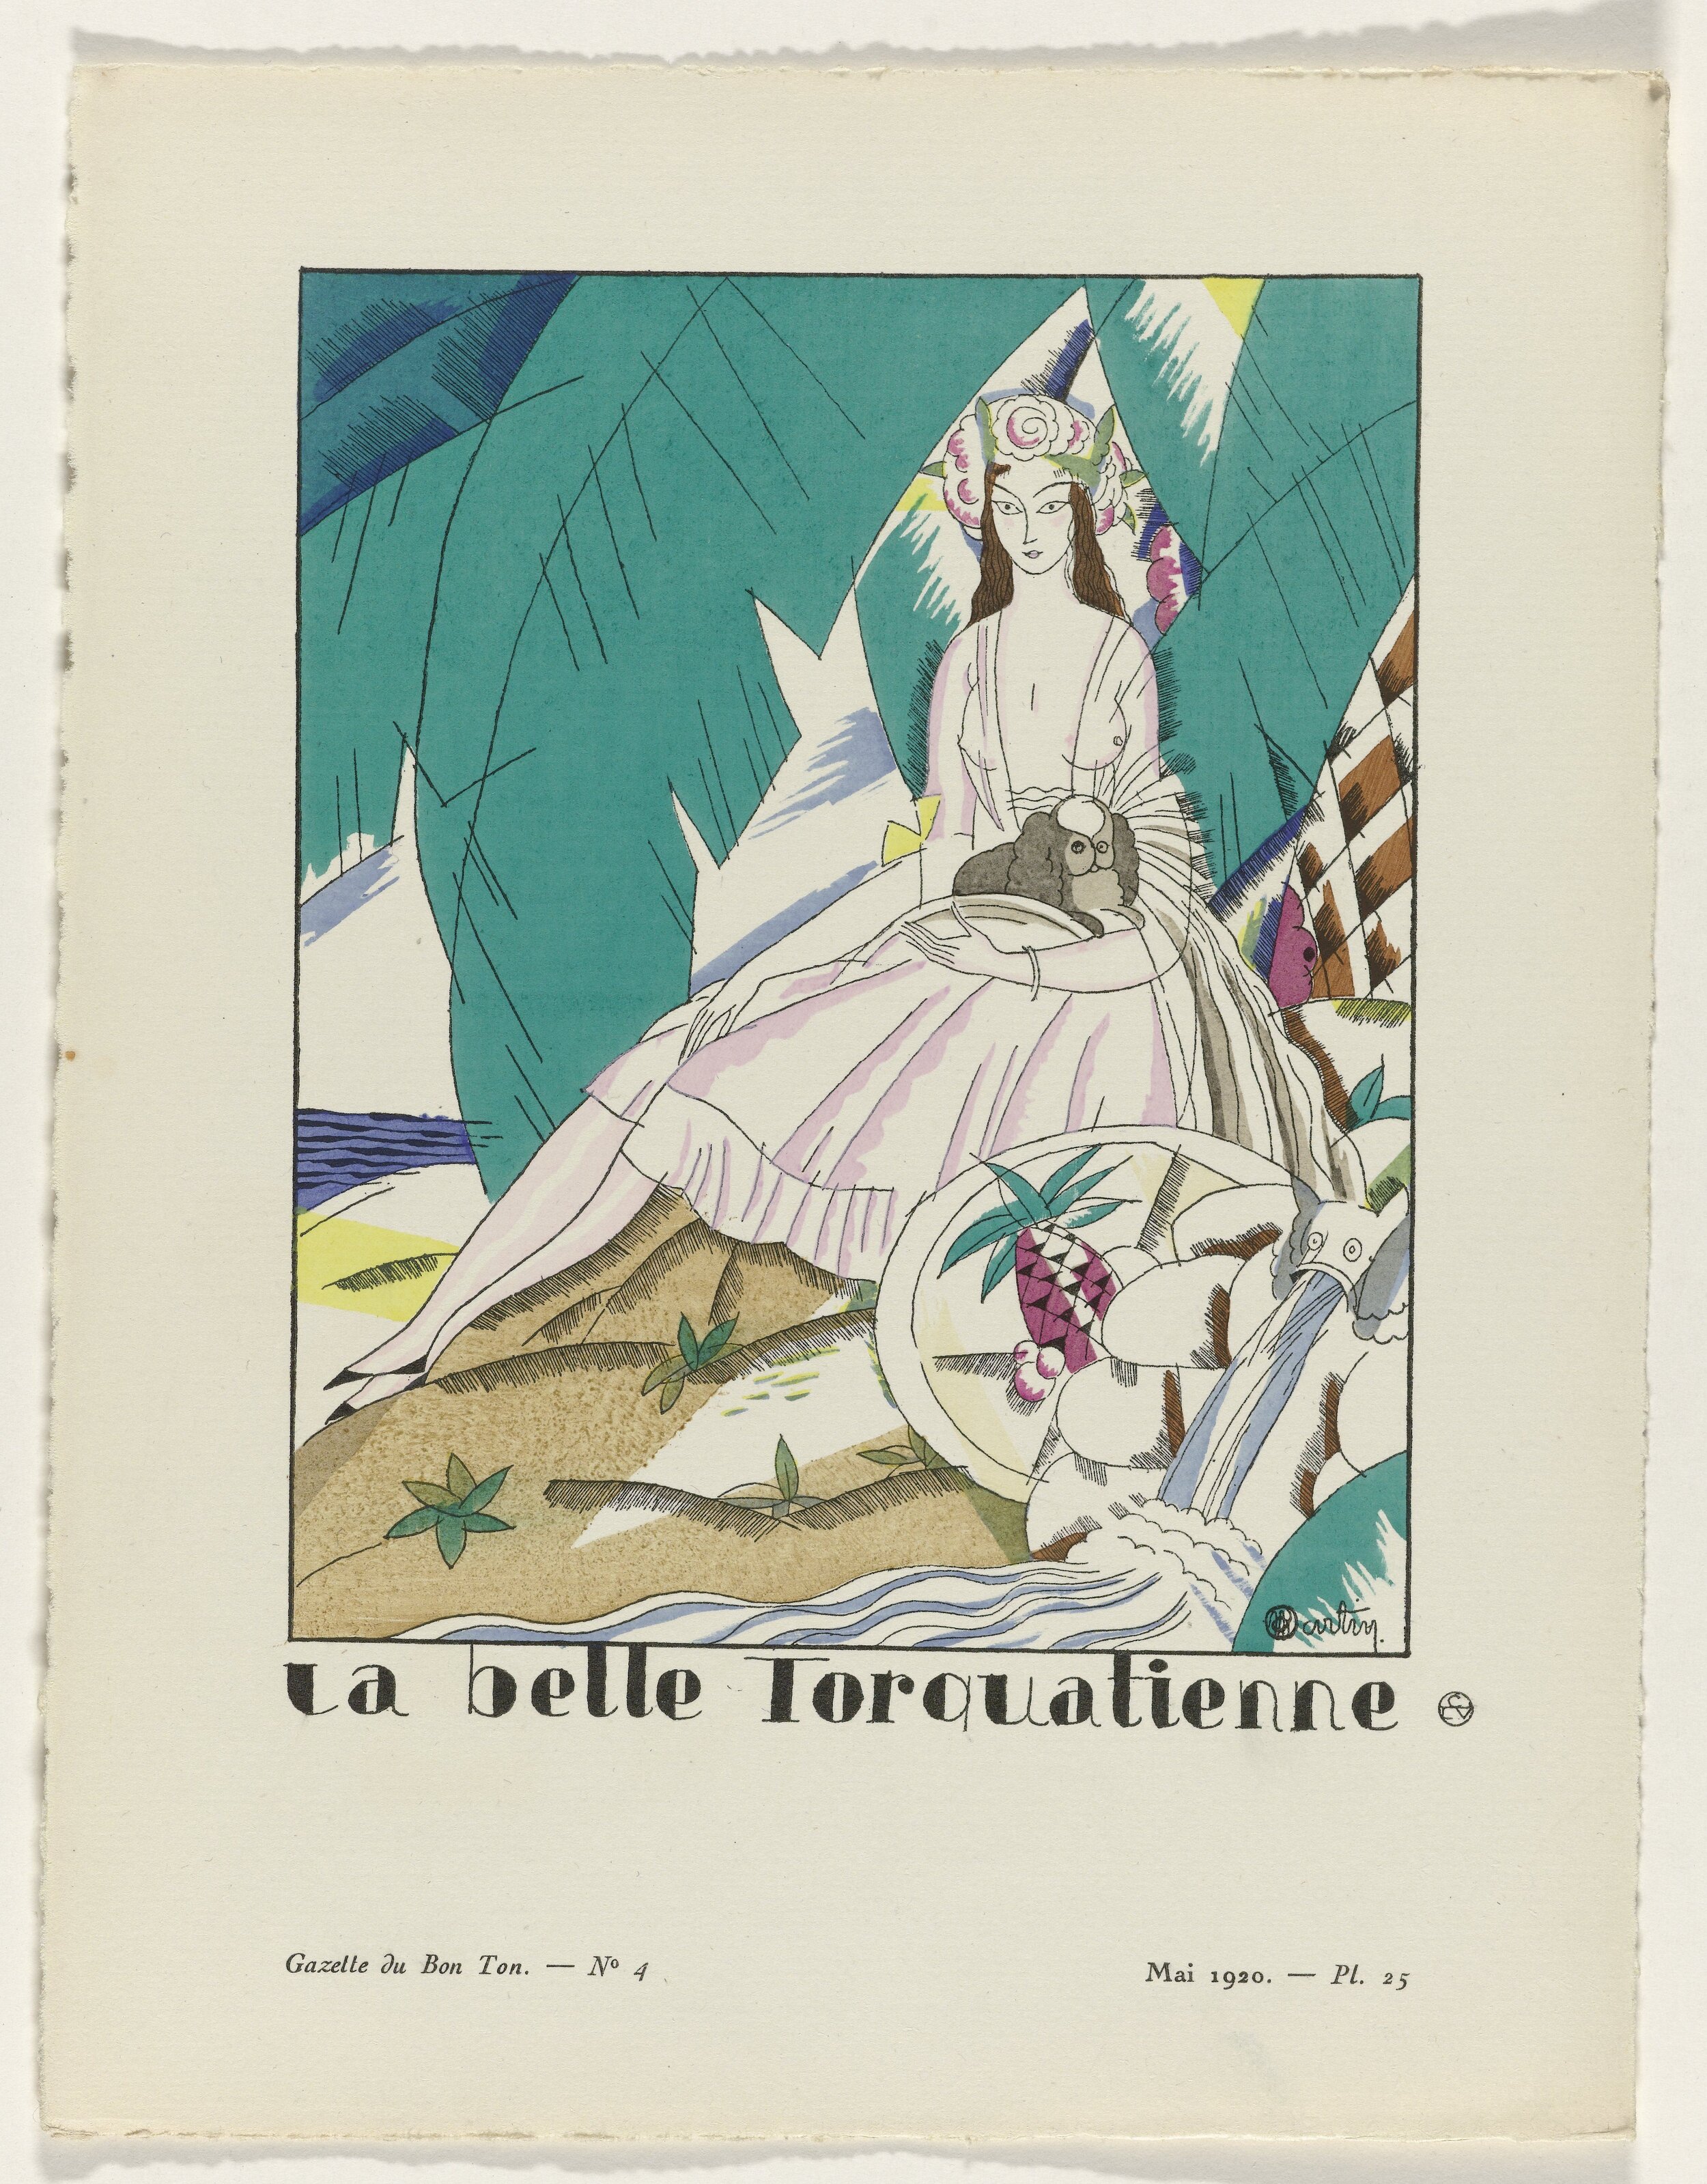 Gazette du Bon Ton, 1920 - No. 4, Pl. 25: La belle torquatienne, Charles Martin, 1920